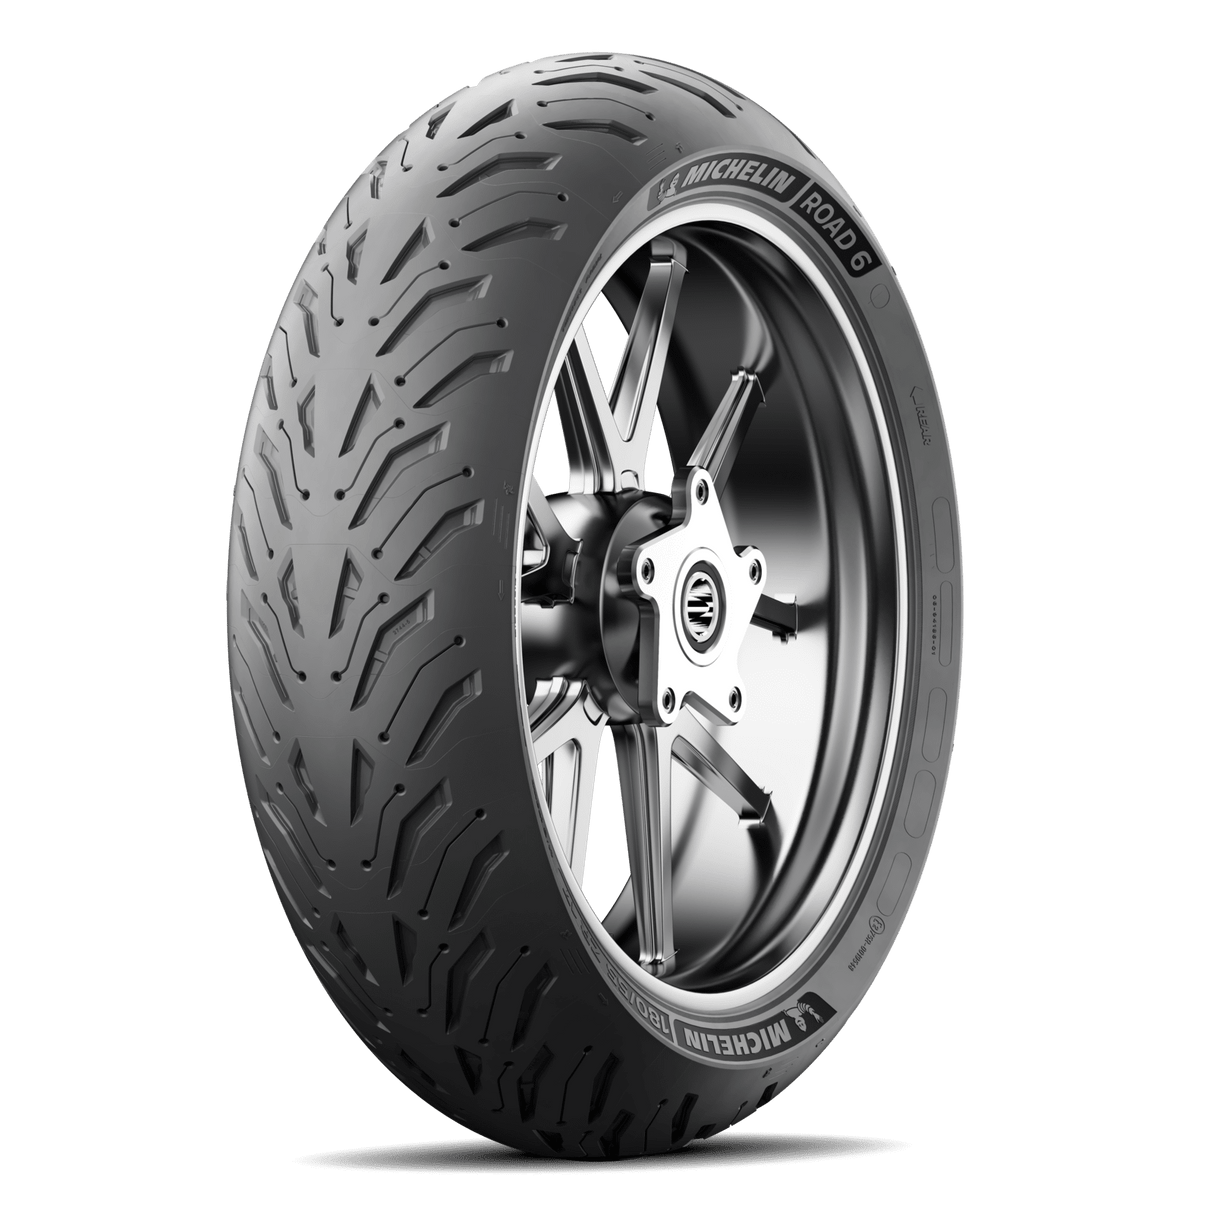 Michelin Road 6 150/70 ZR 17 (69W) Rear Tyre